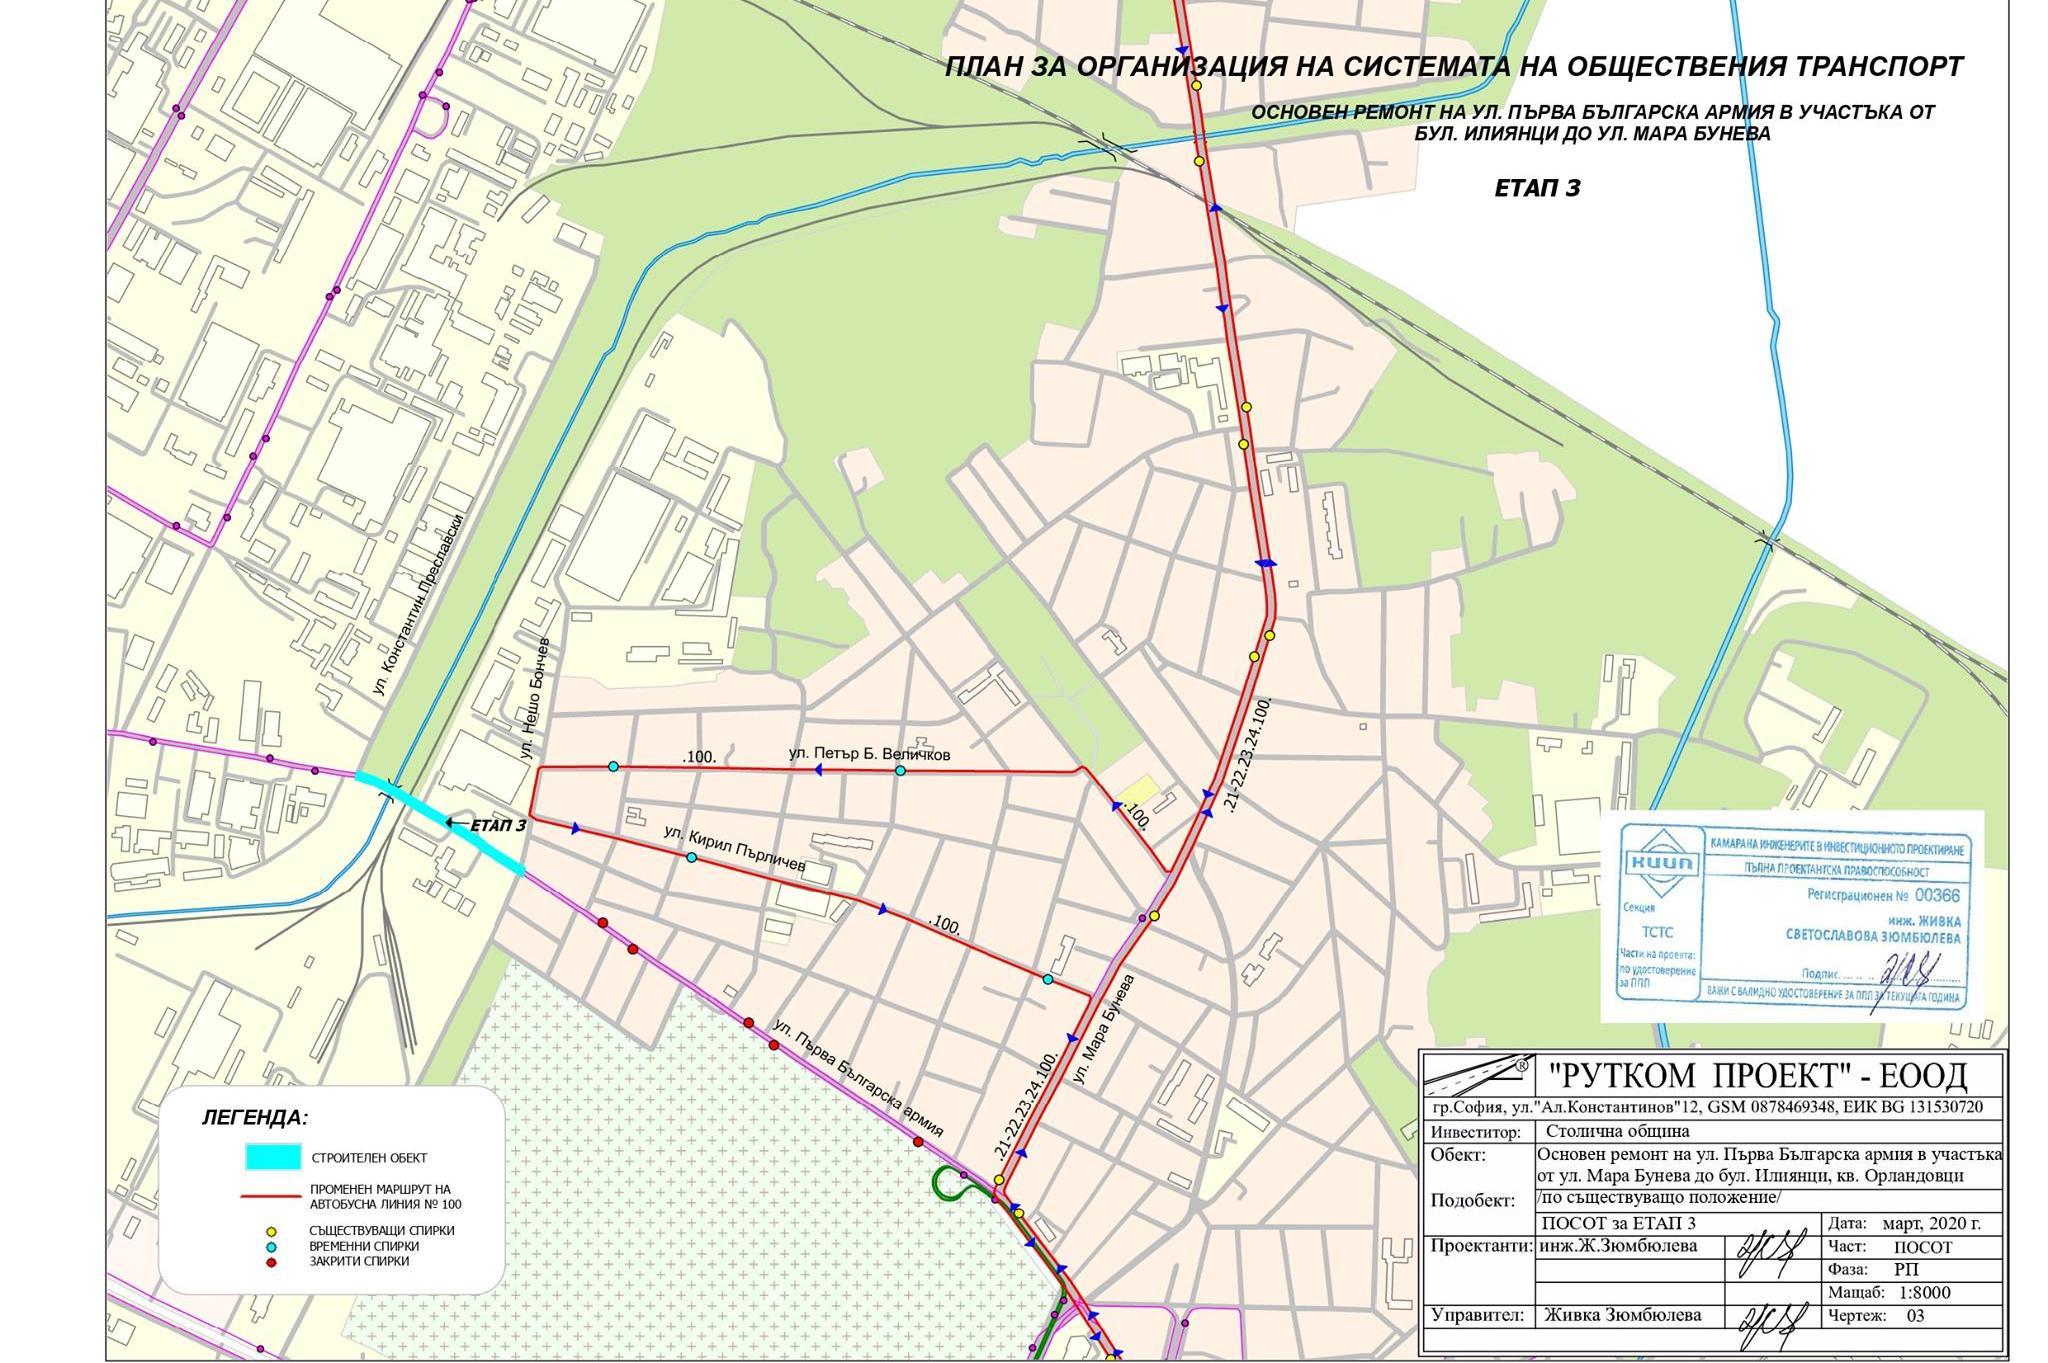 Заради ремонта на "Първа българска армия" променят маршрути на автобуси, въ